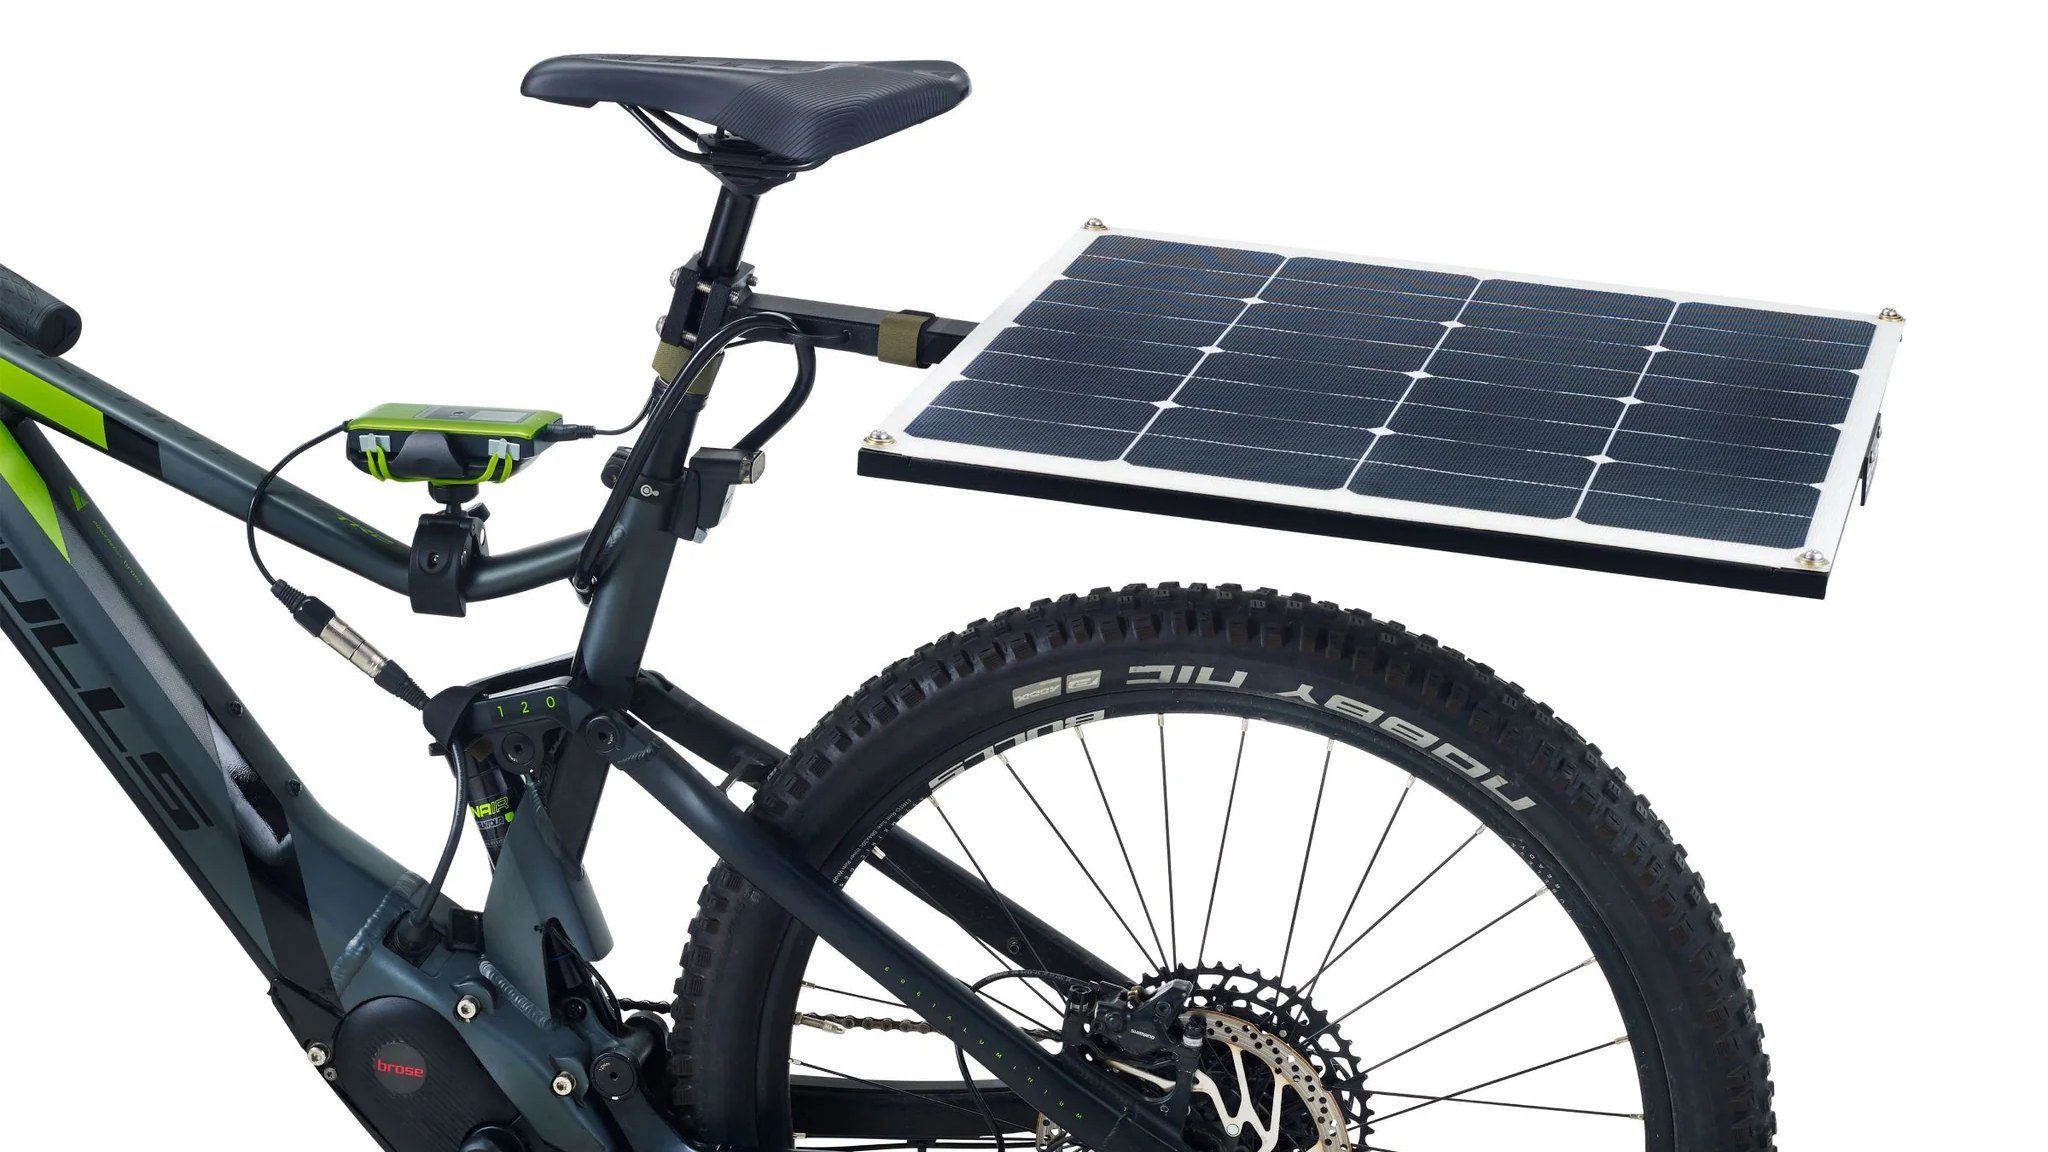 Bild zeigt hinten an einem E-Bike montiertes Solarpanel